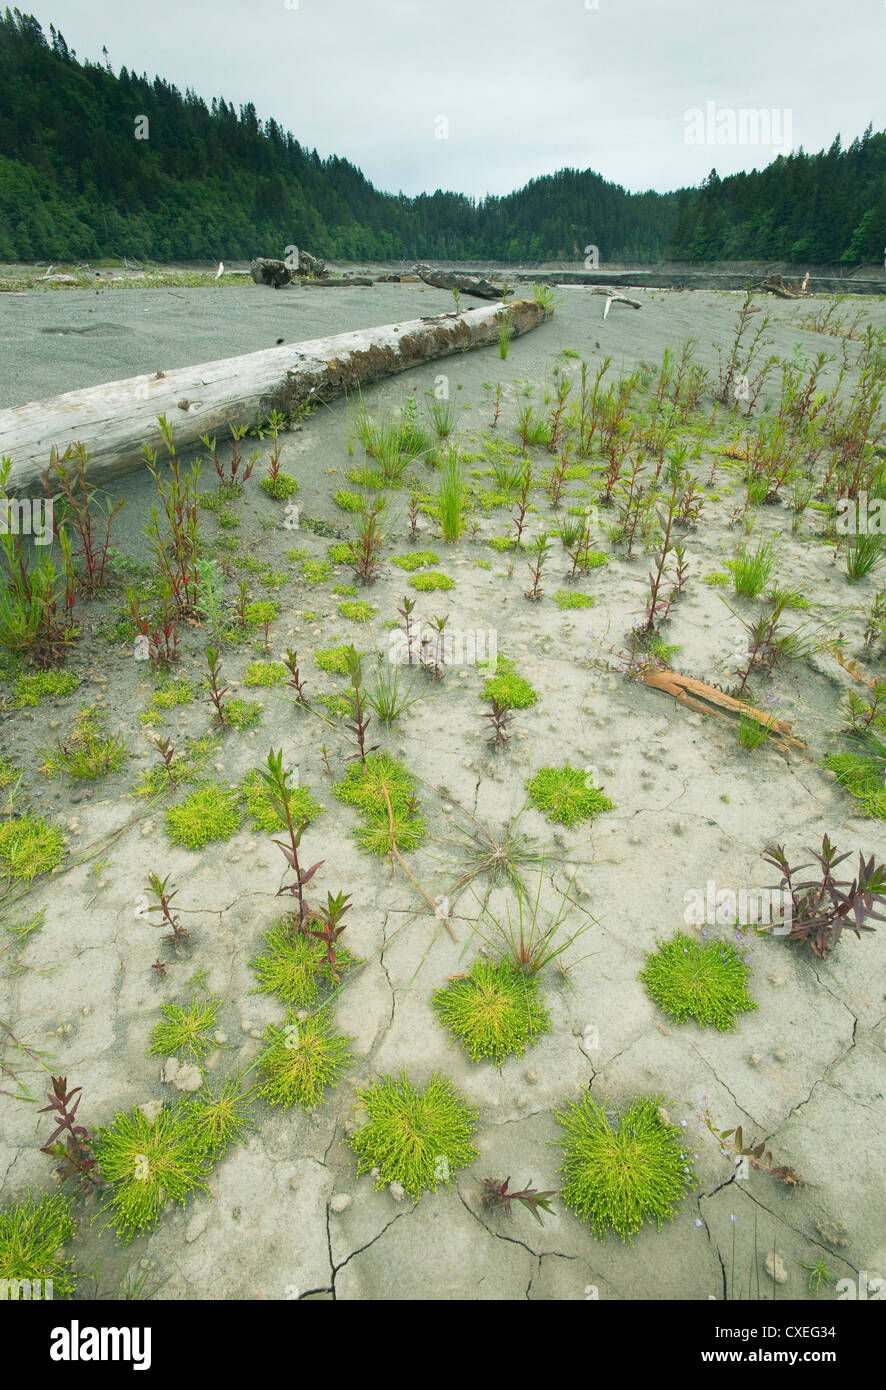 La vie éclate à partir de sédiments de lacs, de rétablissement de la rivière Elwha, Washington Peninula olympique Banque D'Images